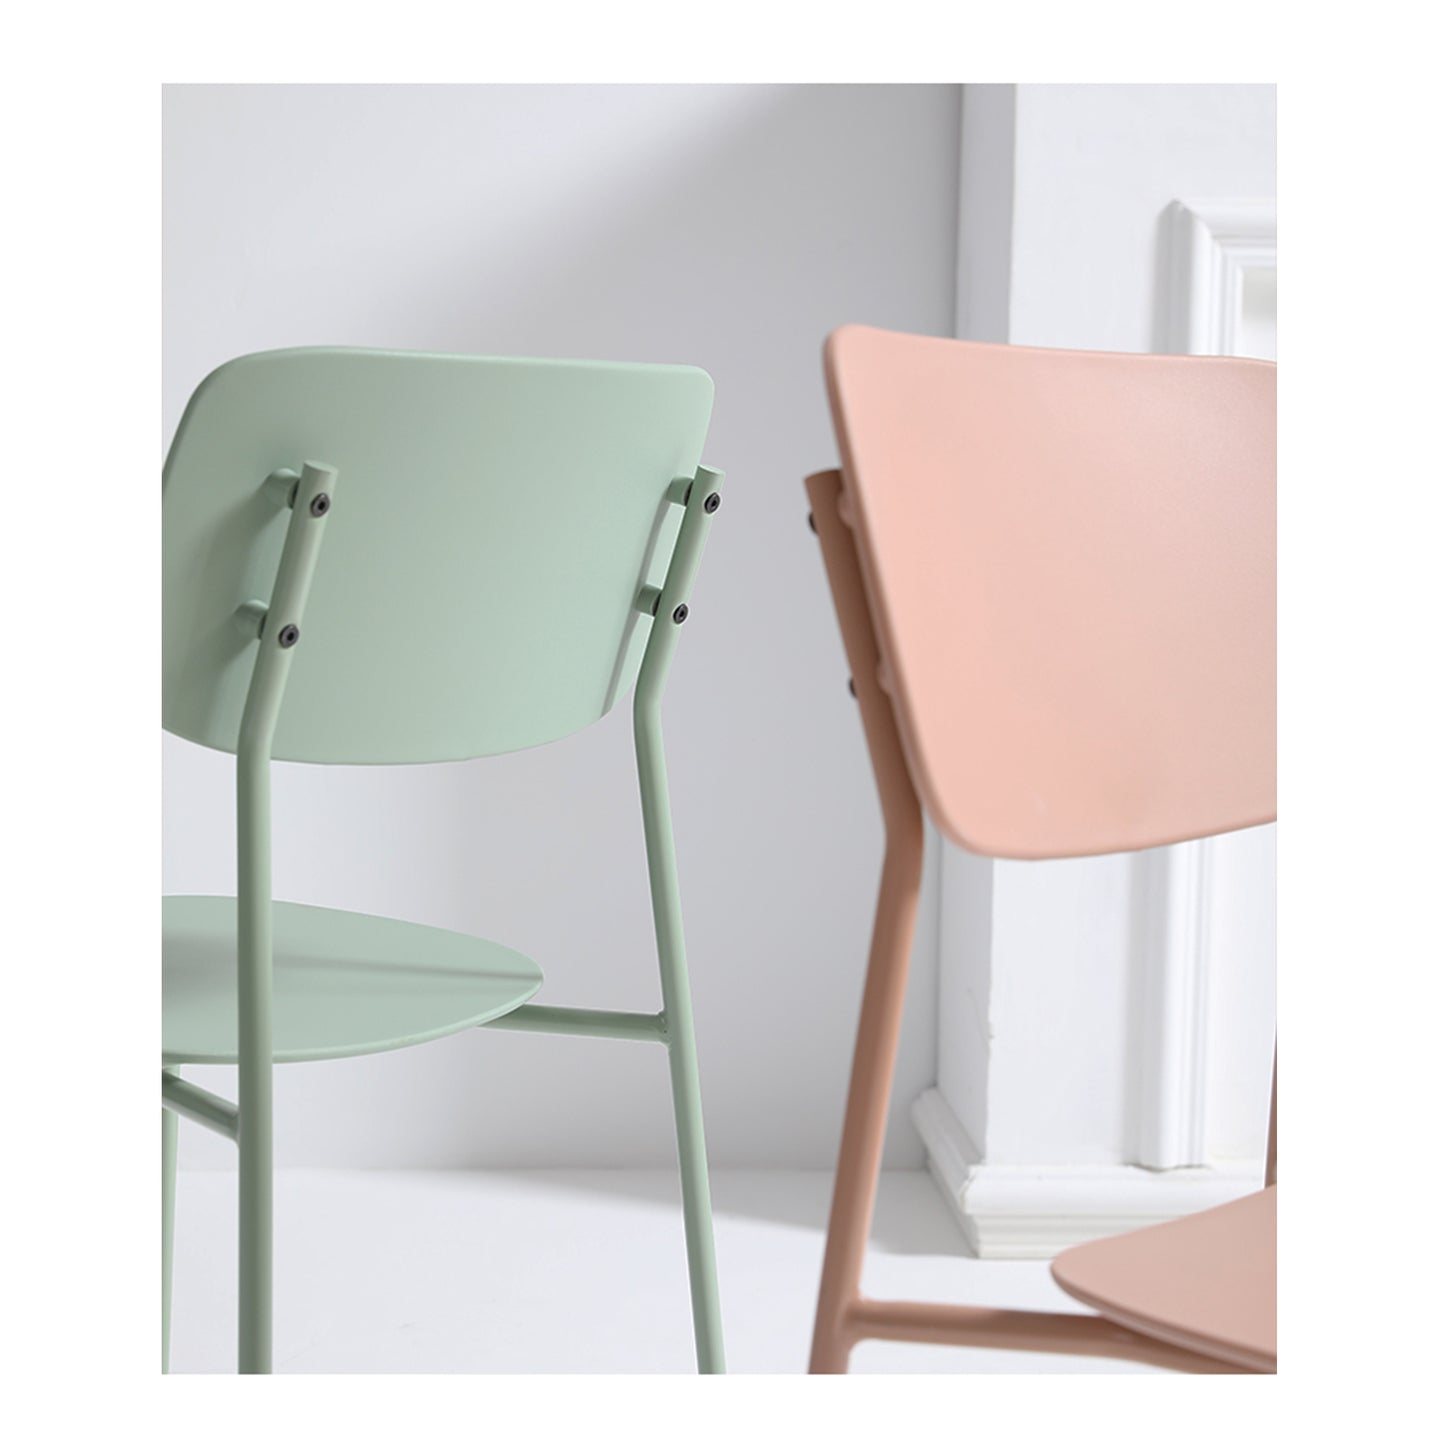 Lot de 4 chaises scandinaves au design minimaliste coloris vert très tendance